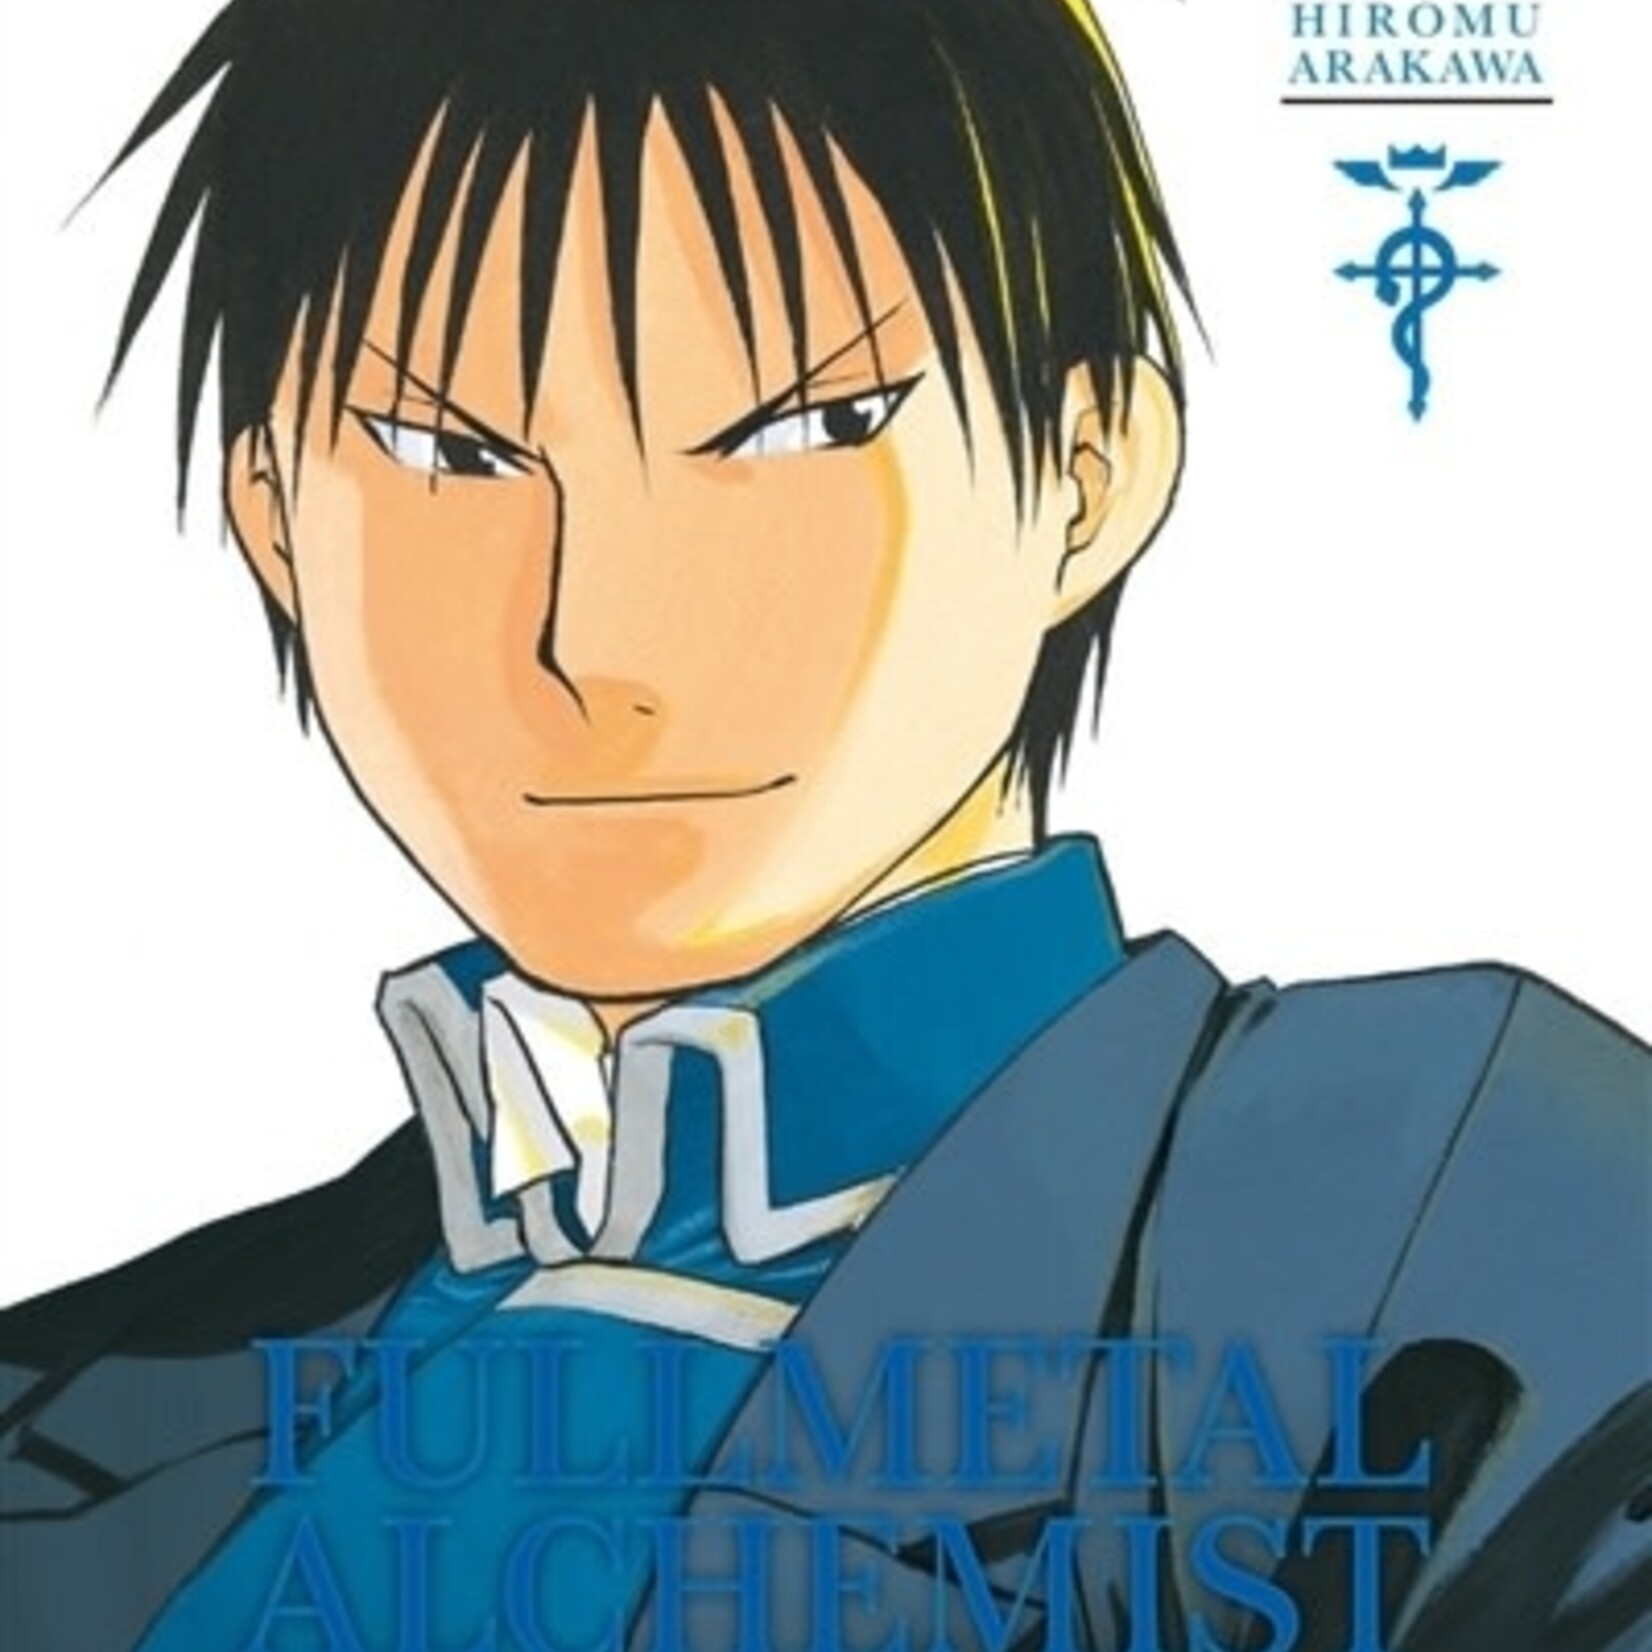 Kurokawa *****Manga - Fullmetal Alchemist Perfect Tome 03